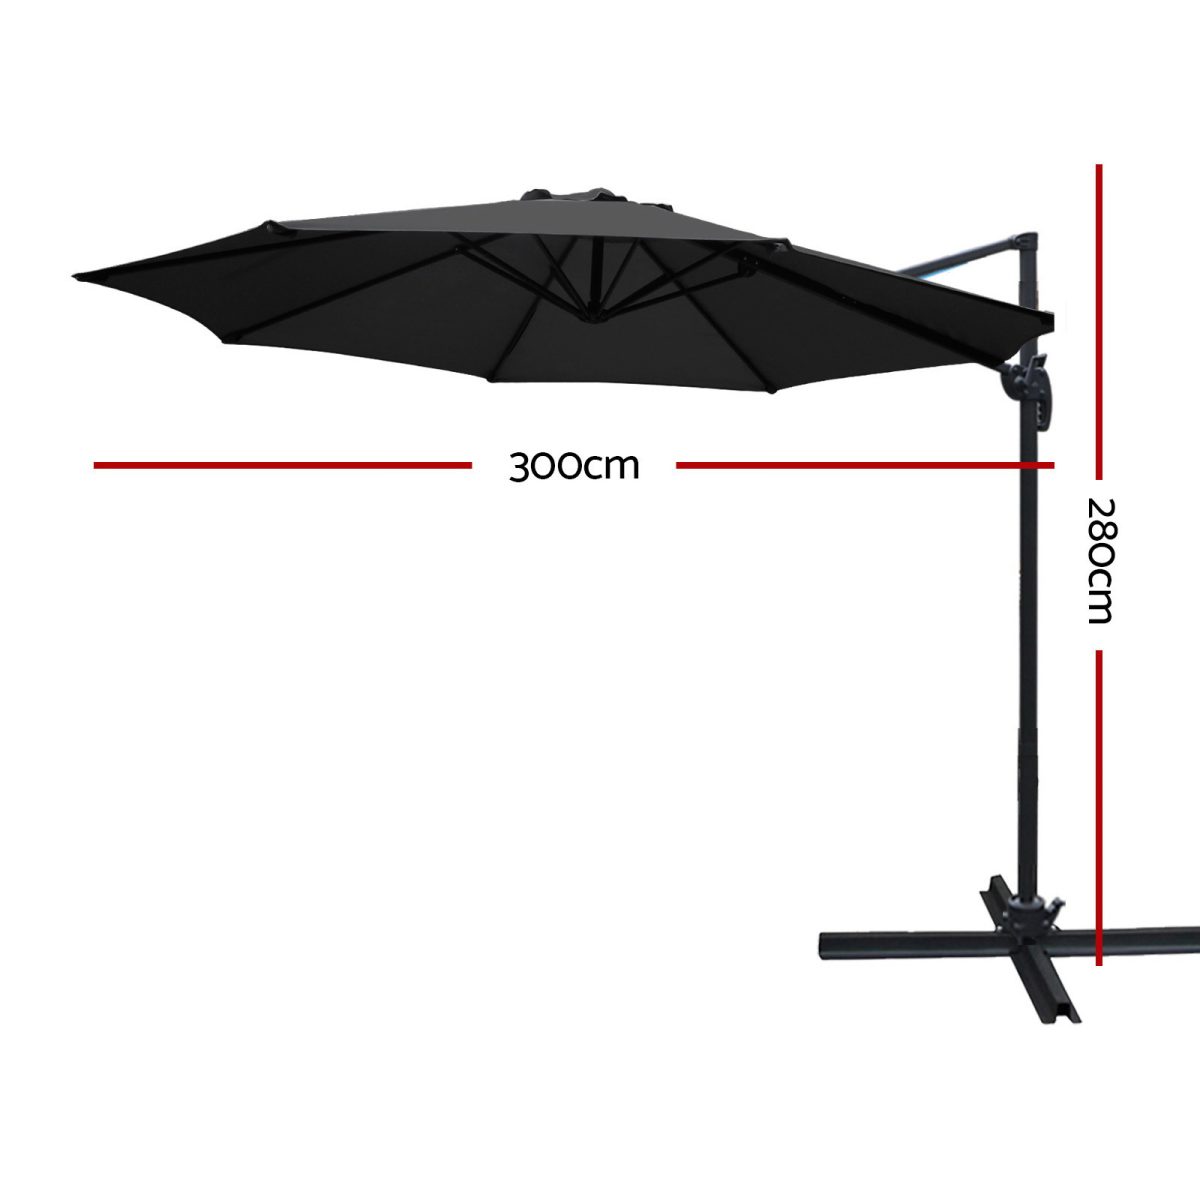 Instahut Roma Outdoor Umbrella – Black